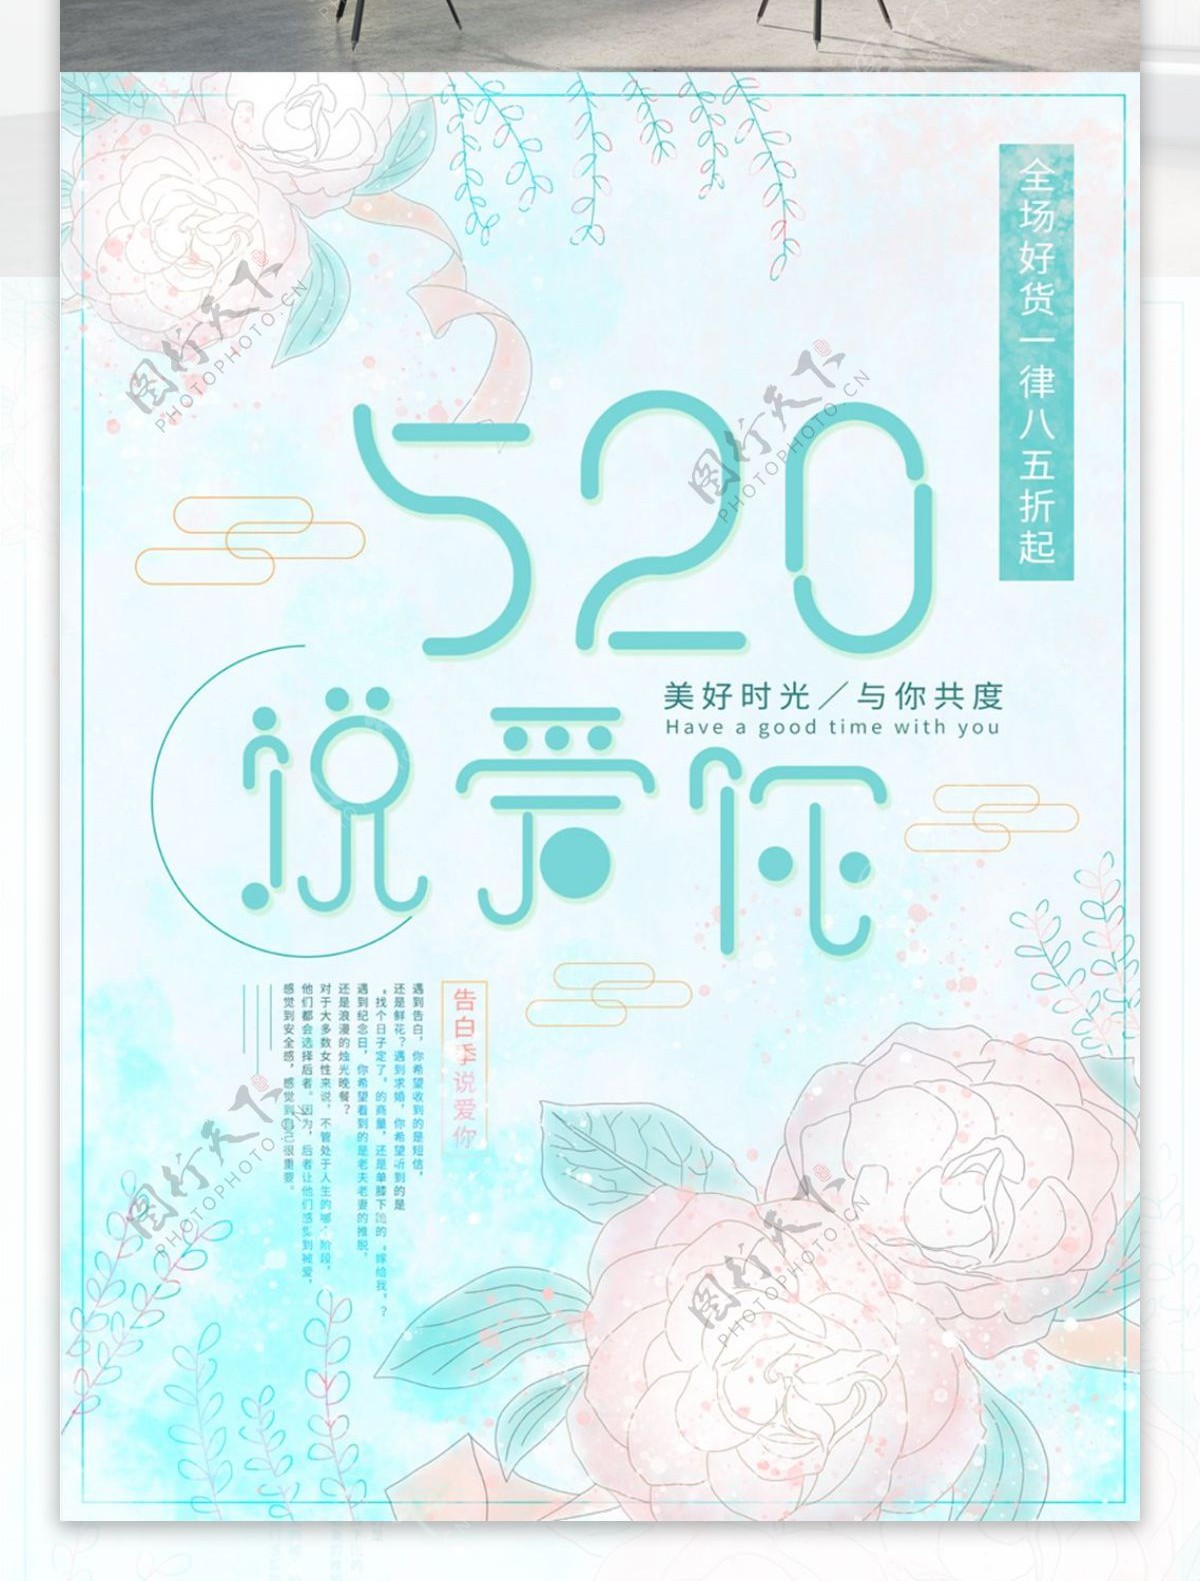 520说爱你小清新原创节日促销海报